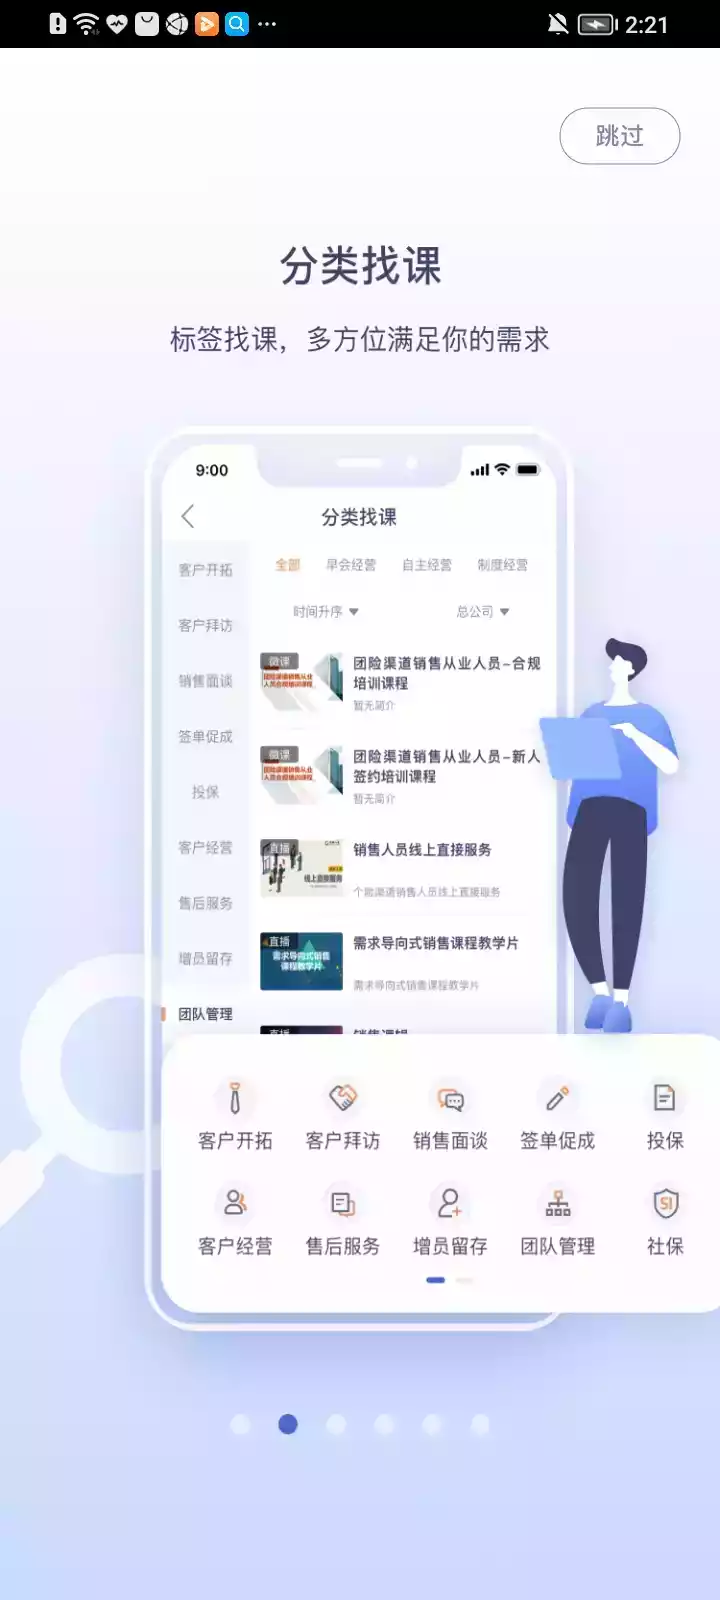 中国人寿2020版易学堂苹果版 截图